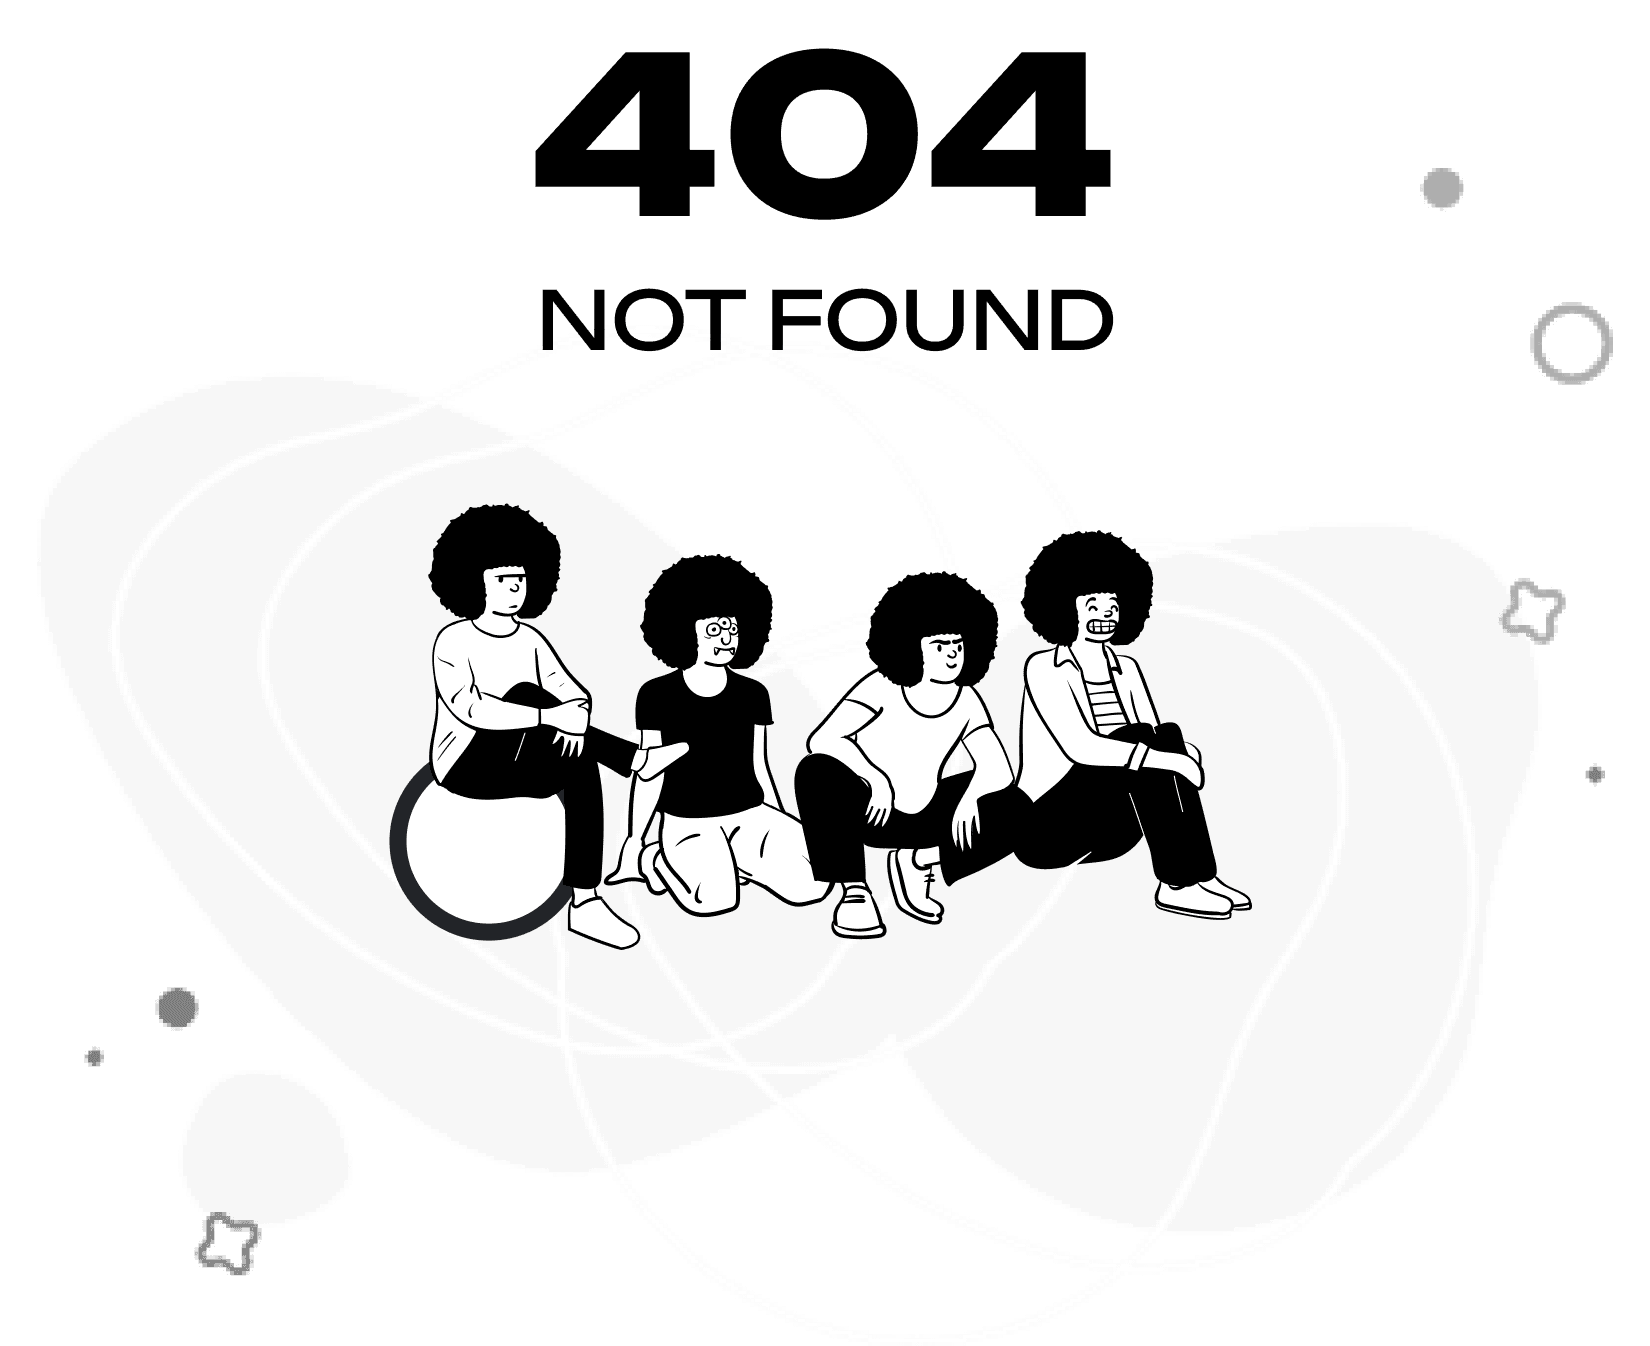 not found